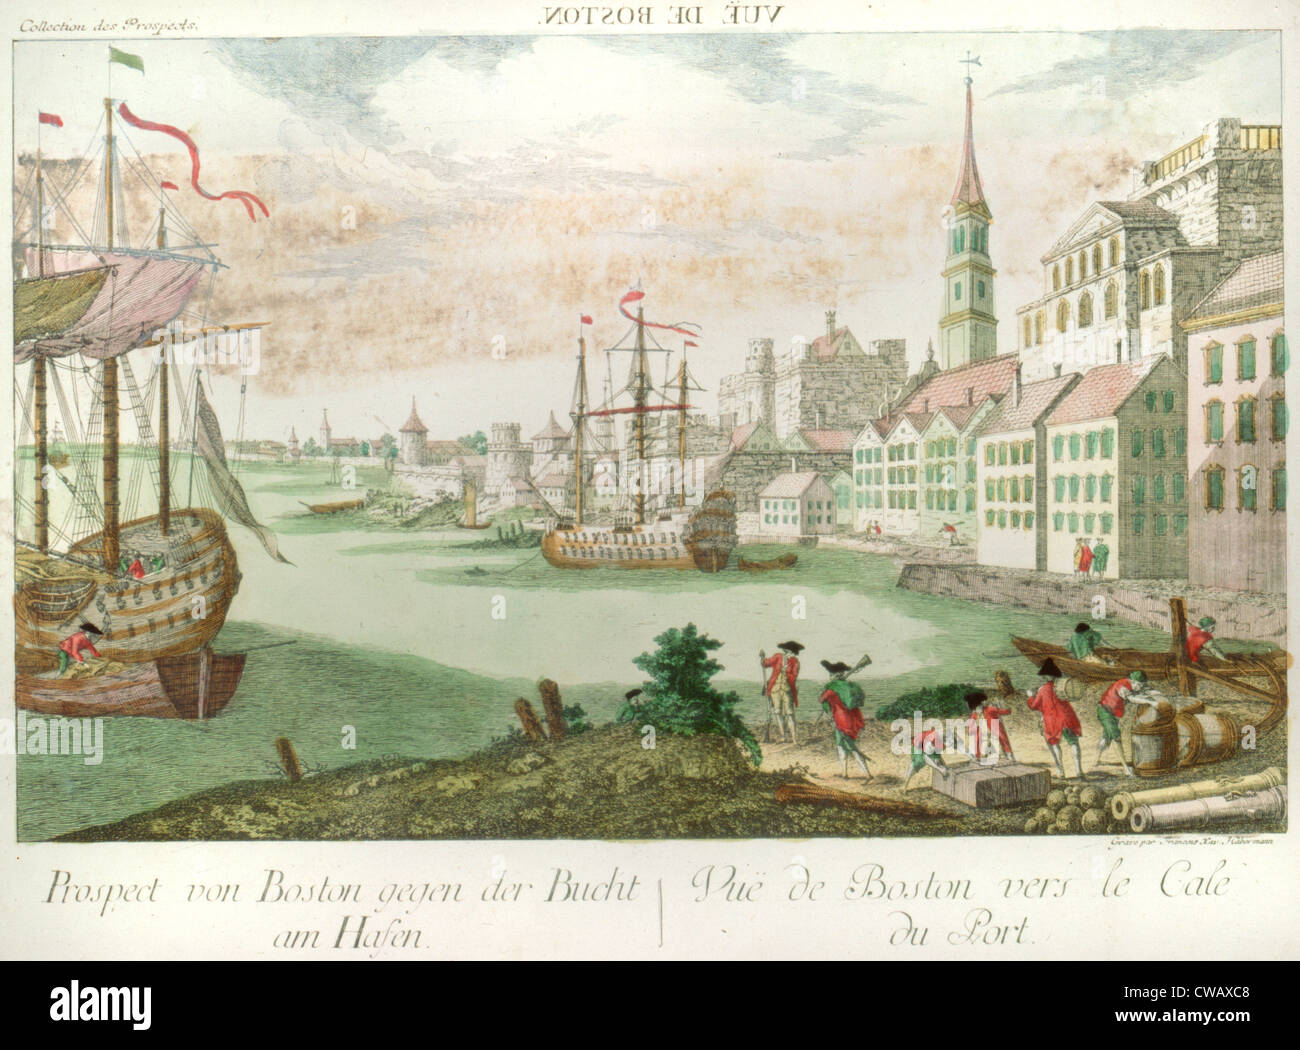 La Rivoluzione Americana, vue de Boston. Prospettiva von Boston gegan der Bucht am Hasen vue de Boston vers le cale du Port, Porto Foto Stock